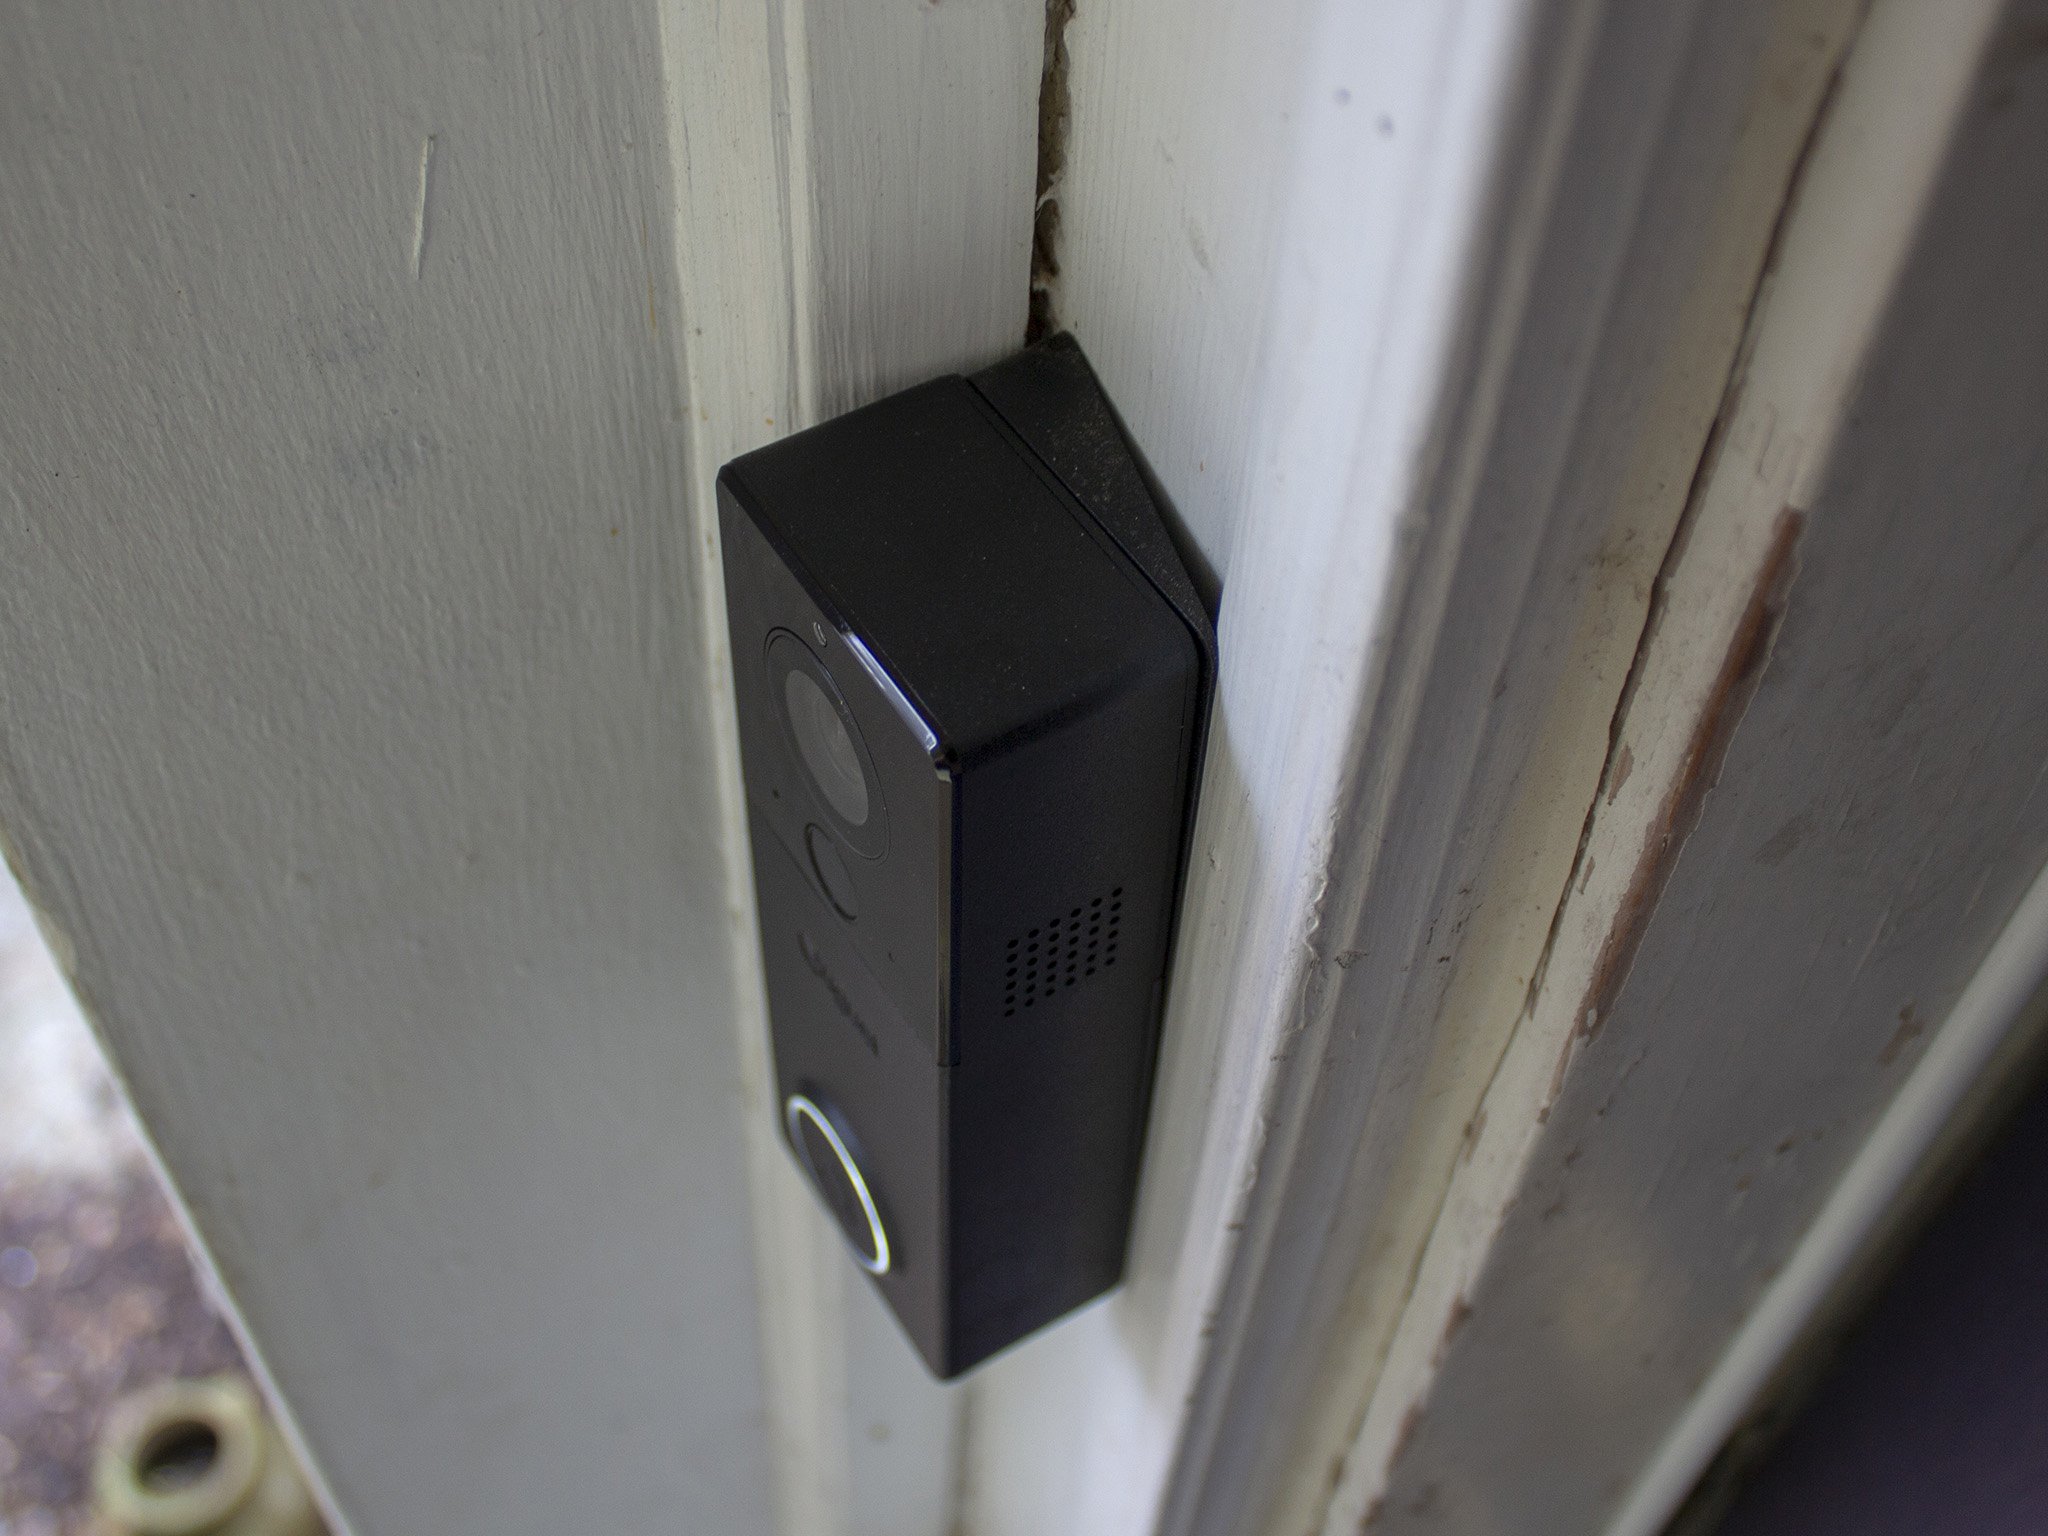 August View Video Doorbell Wedge